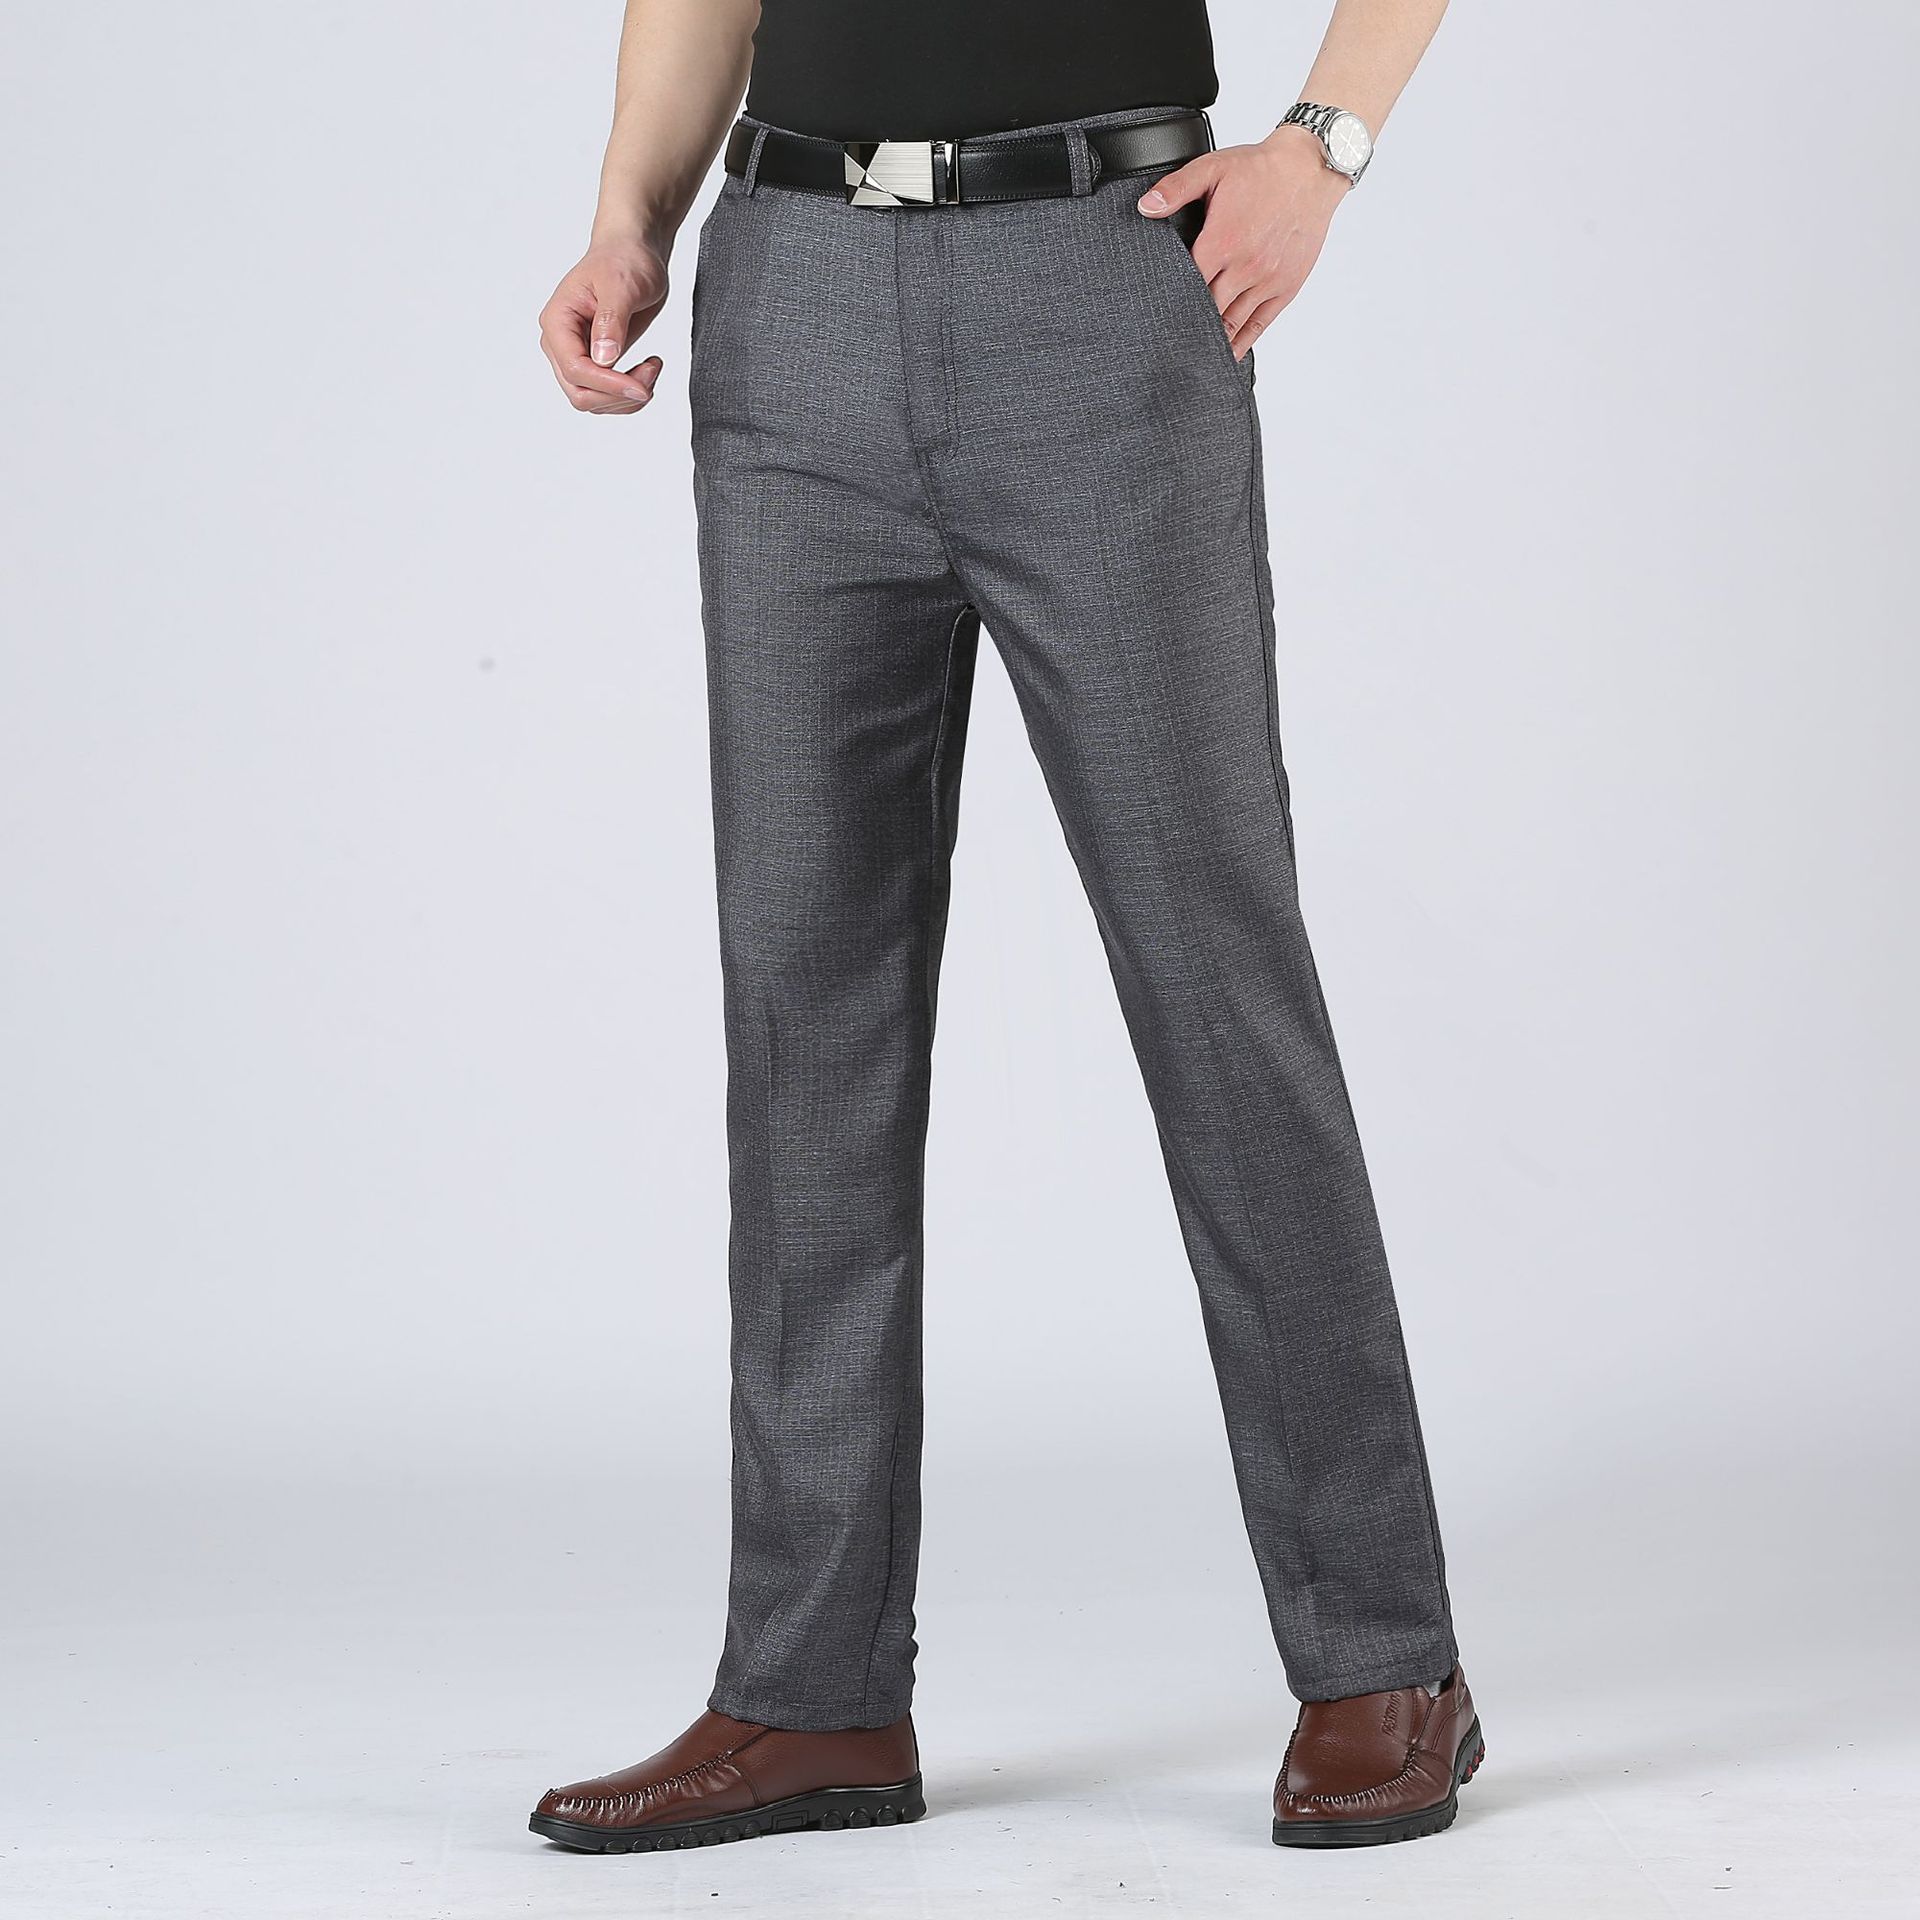 Pantalon homme en Fibre de polyester Polyester  - Ref 3413088 Image 1